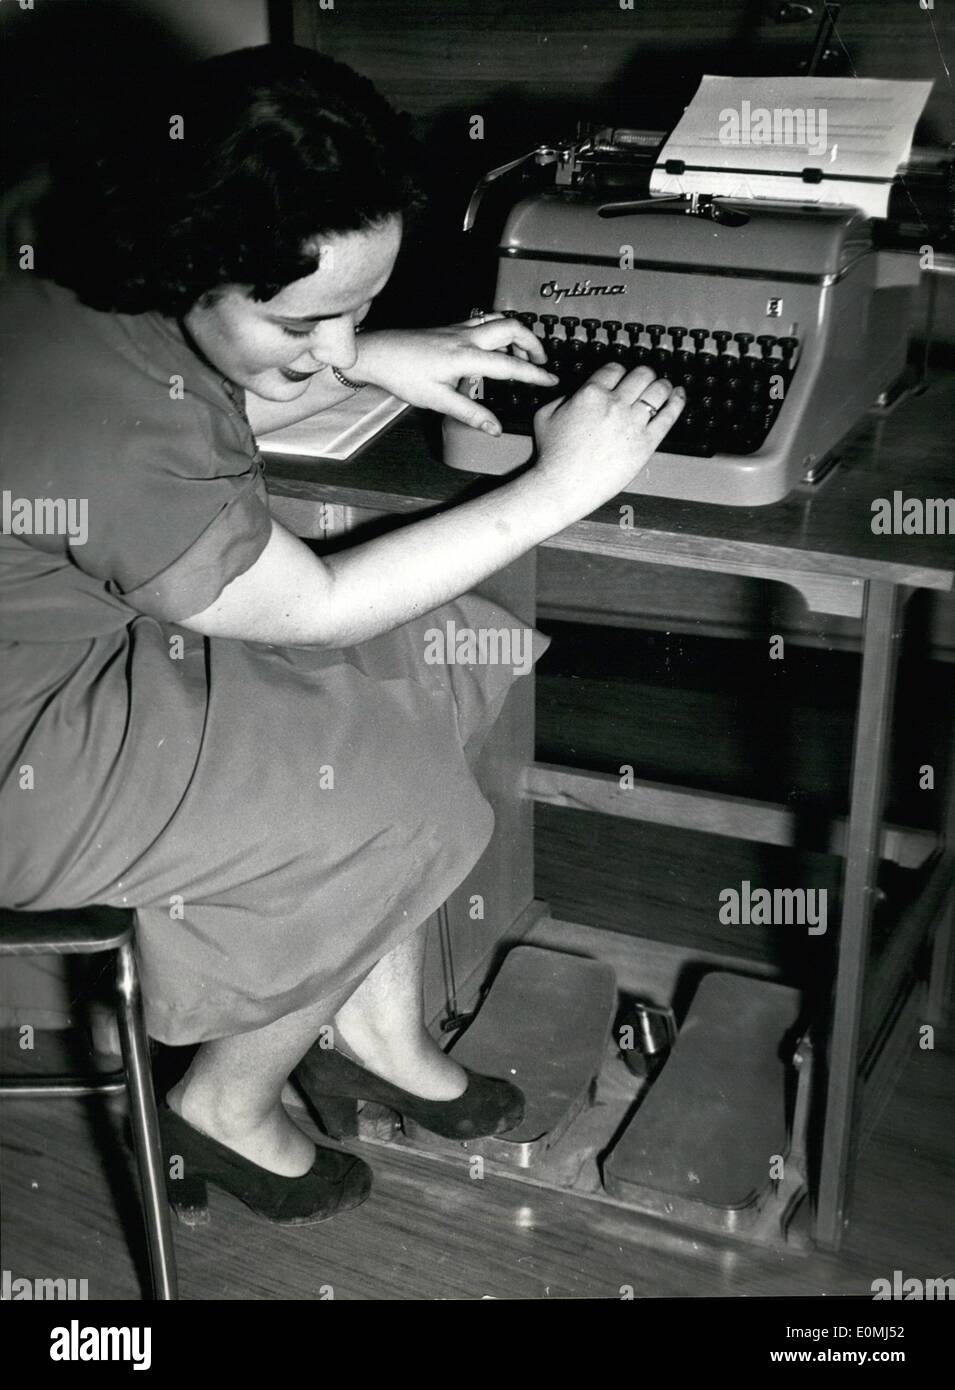 08 août, 1955 - Machine à écrire pour les mains et les pieds qui sera peut-être la machine à écrire de l'avenir. Avec vos pieds vous pouvez modifier la distance entre les lignes, la capitale des lettres, vous pouvez servir le tube et le returner le tabulateur. Cette machine à écrire vous aidera à crippels dans leur travail en particulier. Banque D'Images